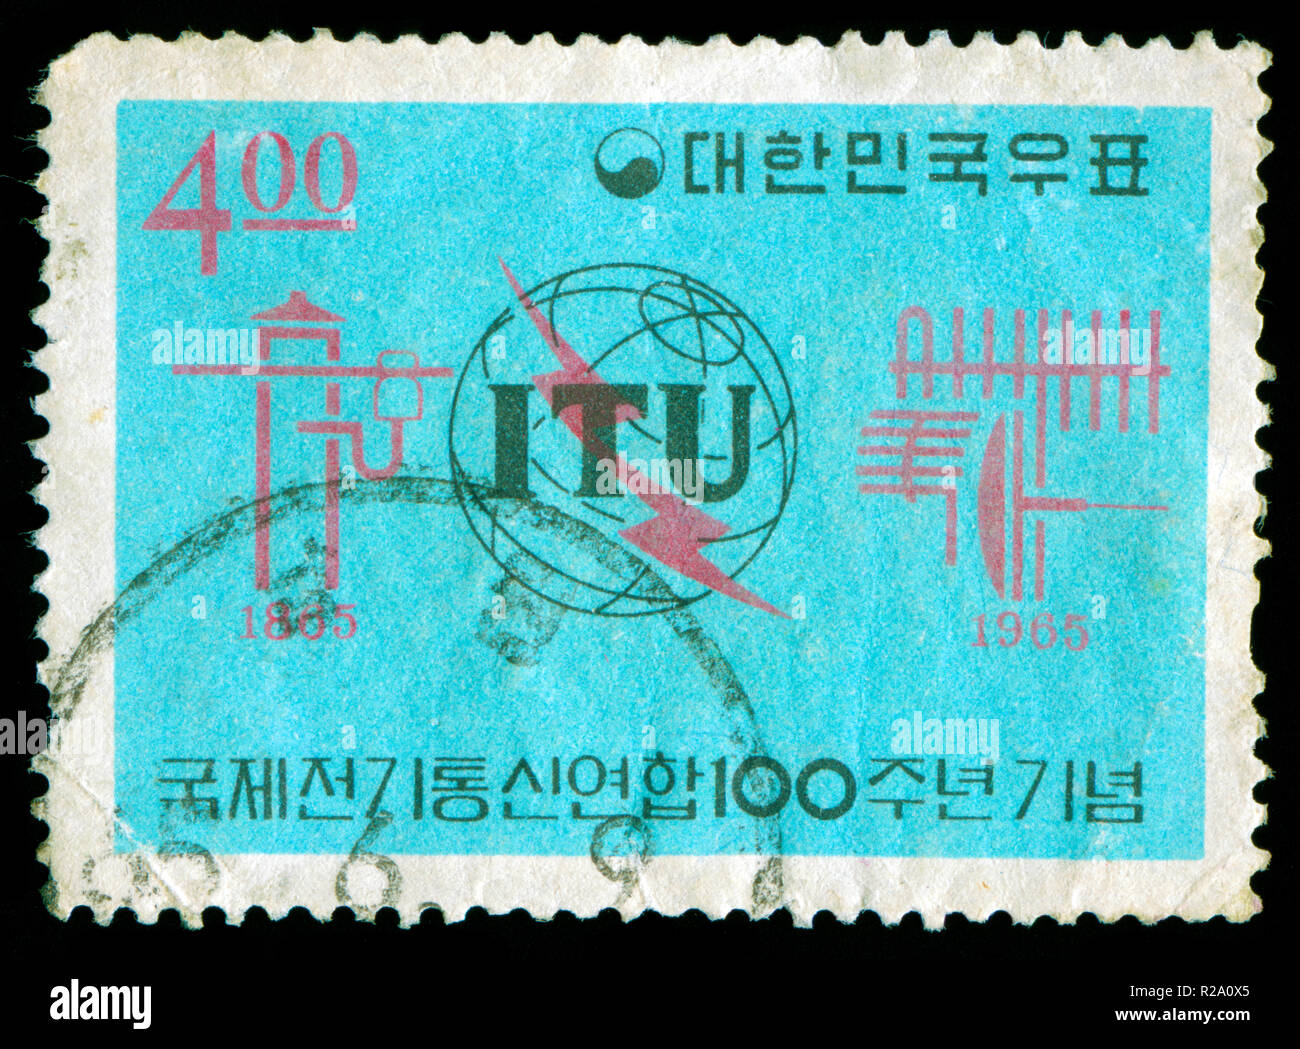 Timbre cachet de la Corée du Sud dans l'I.T.U. (Union Internationale des Télécommunications), série Centary publié en 1965 Banque D'Images